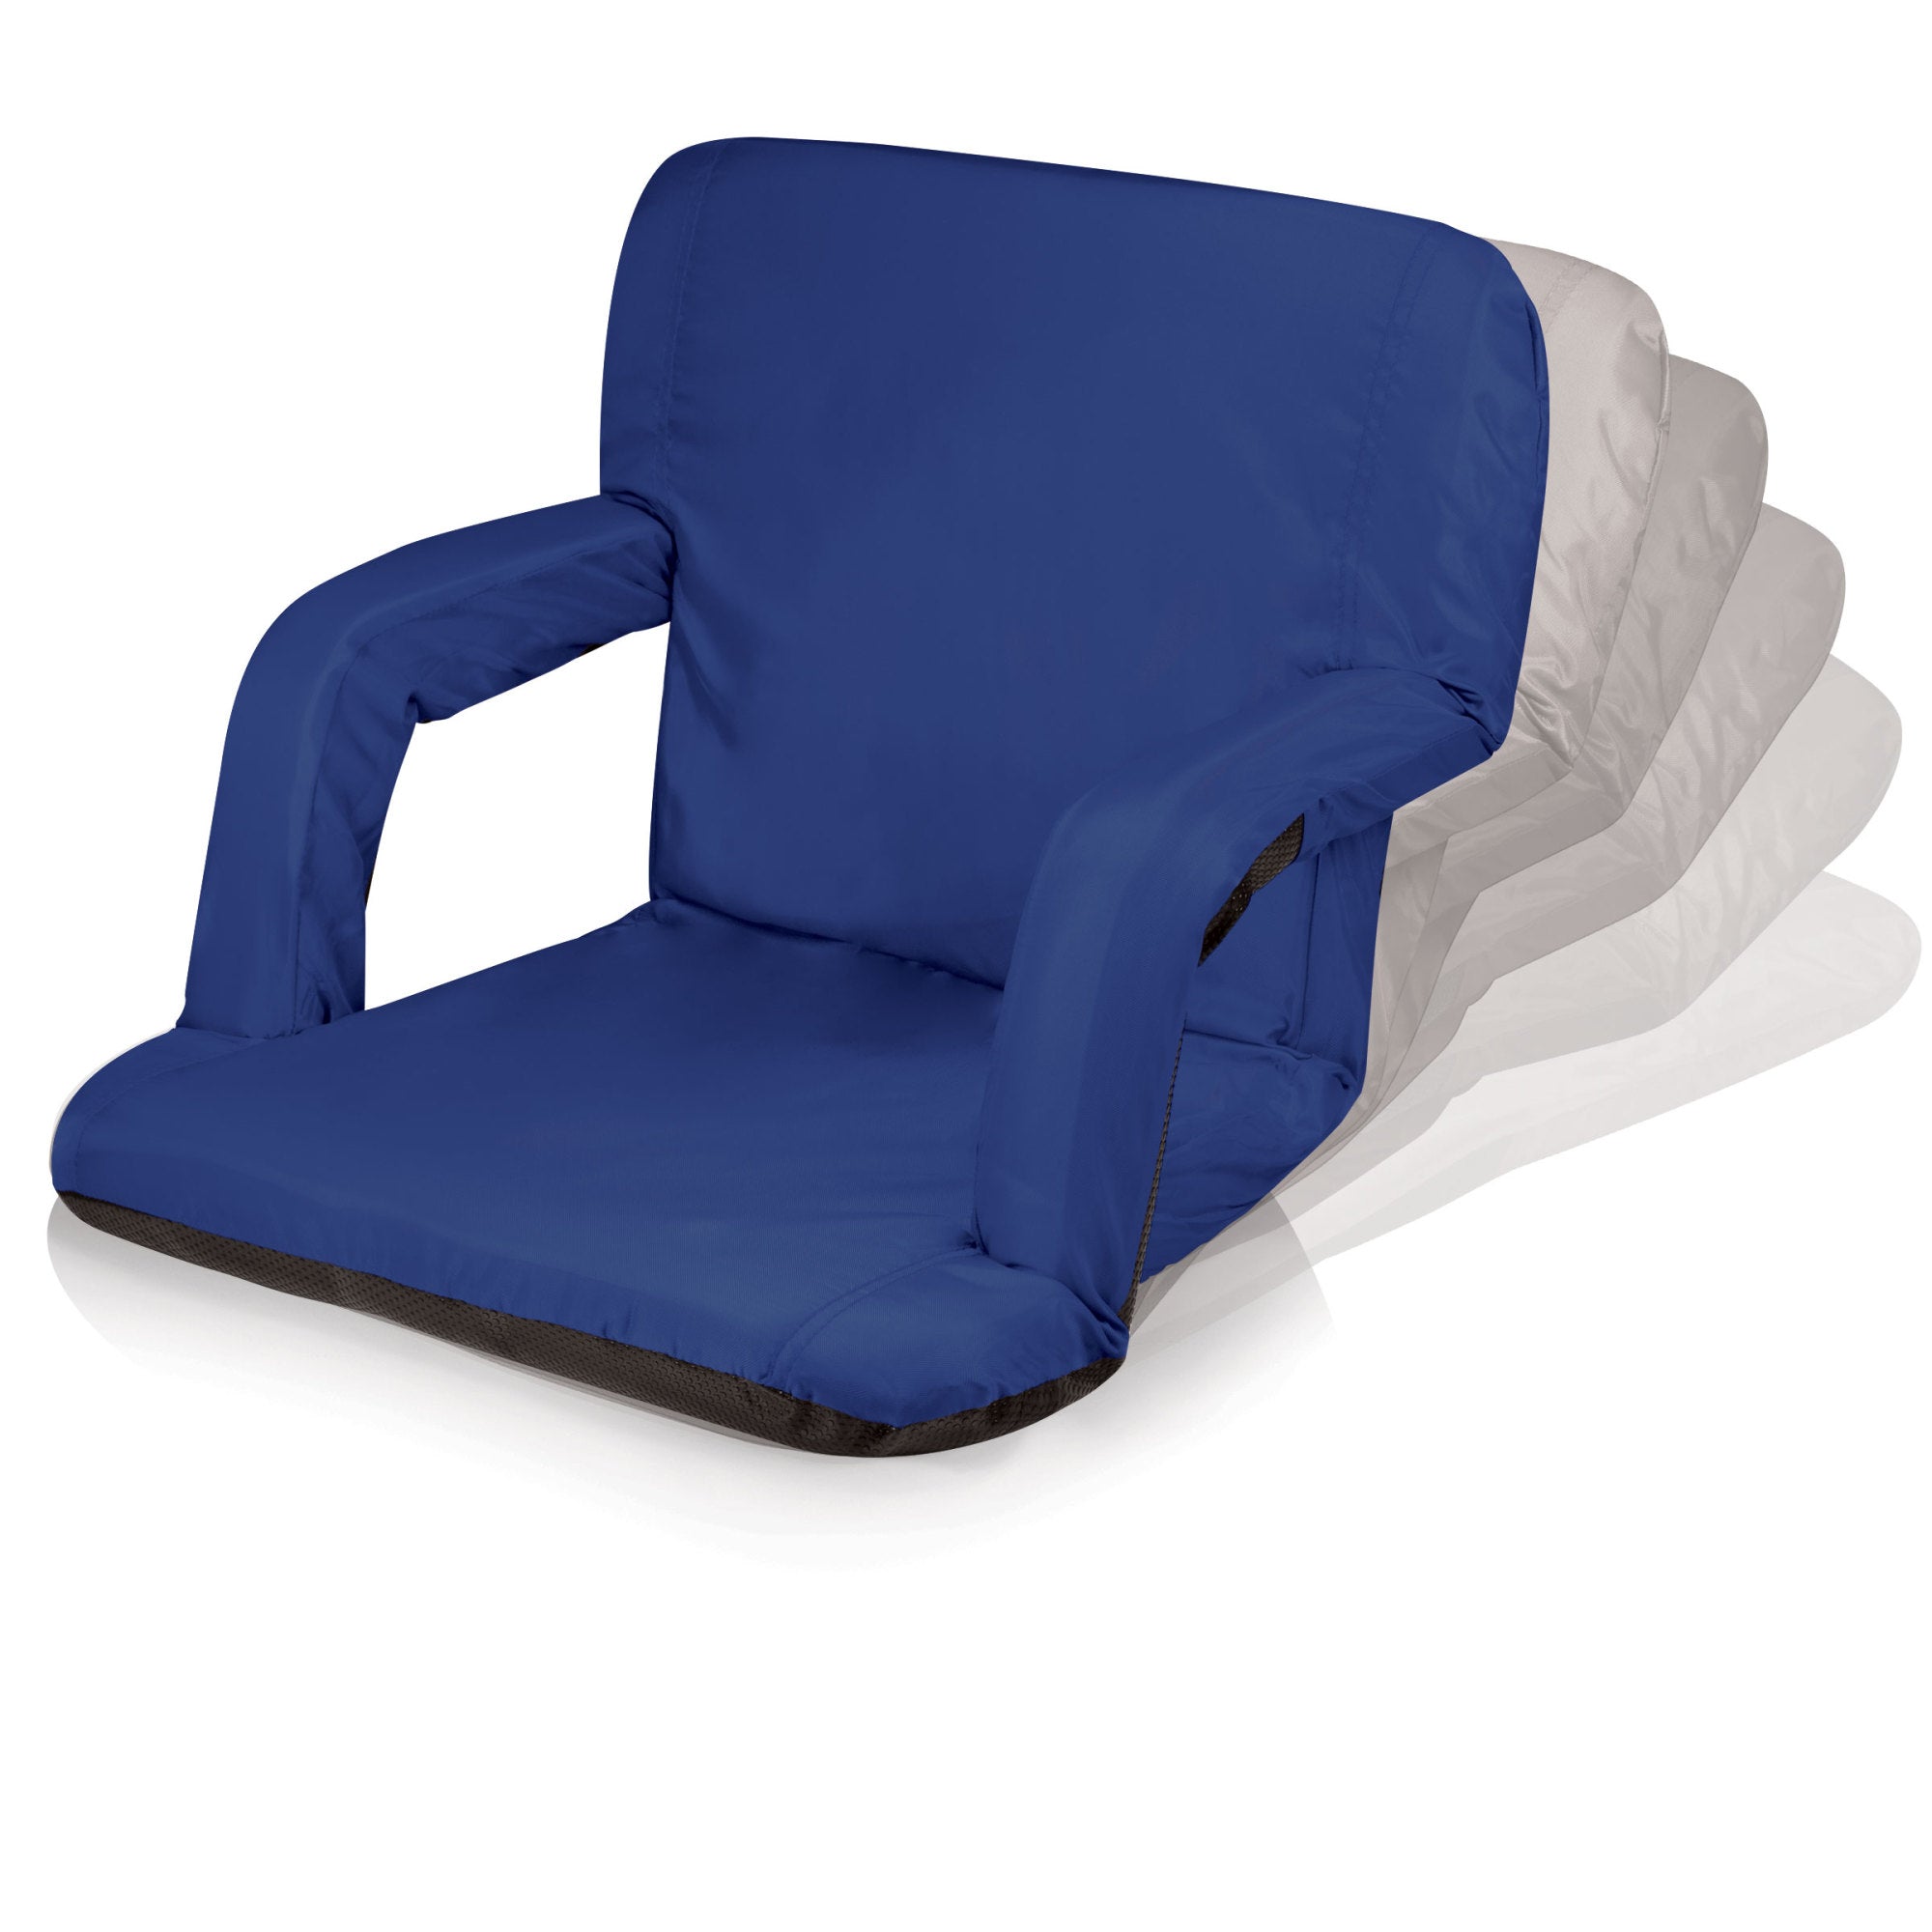  Caluself Stadium Seats for Bleachers 𝐖𝐢𝐭𝐡𝐨𝐮𝐭 Back  Support,Portable Bleacher Cushion Lightweight Outdoor Cushion Stadium Seat  for Sports Events,Outing,Fishing(No Back Support) : Sports & Outdoors